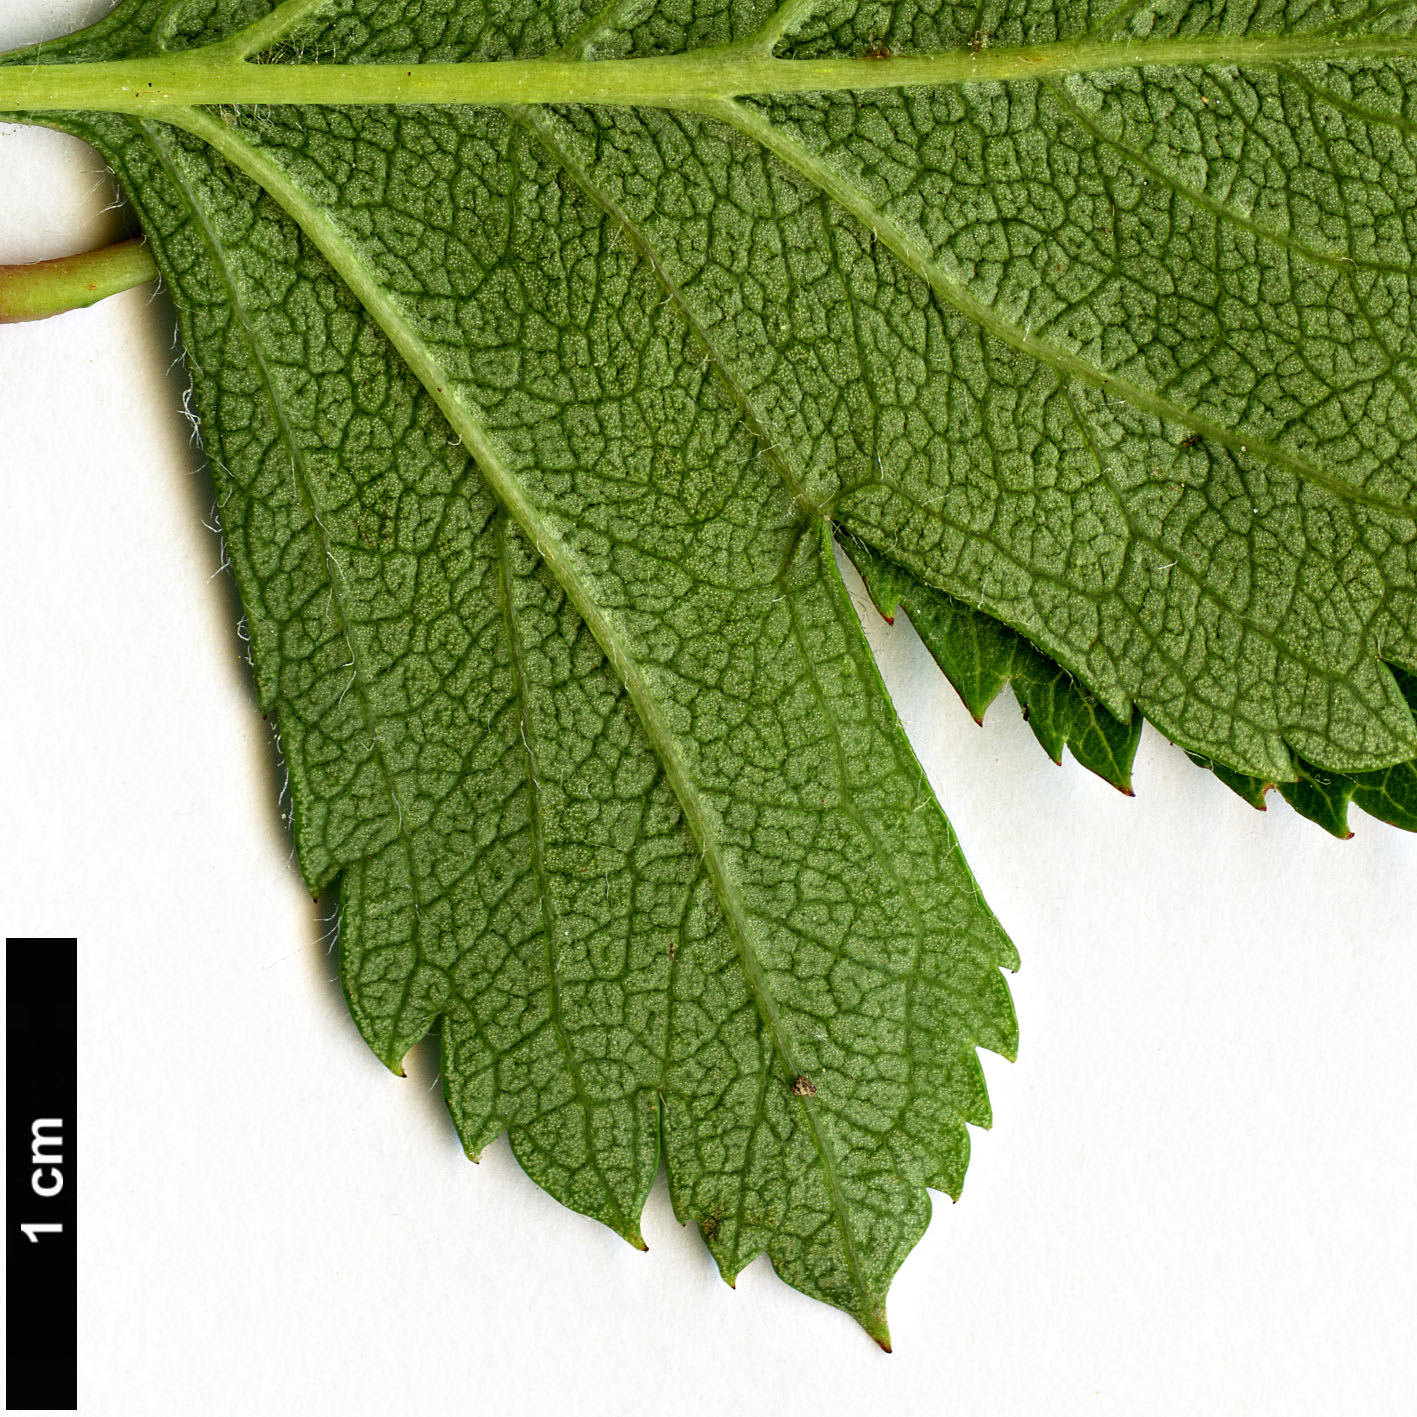 High resolution image: Family: Rosaceae - Genus: Crataegus - Taxon: ×kyrtostyla (C.monogyna × C.rhipidophylla)